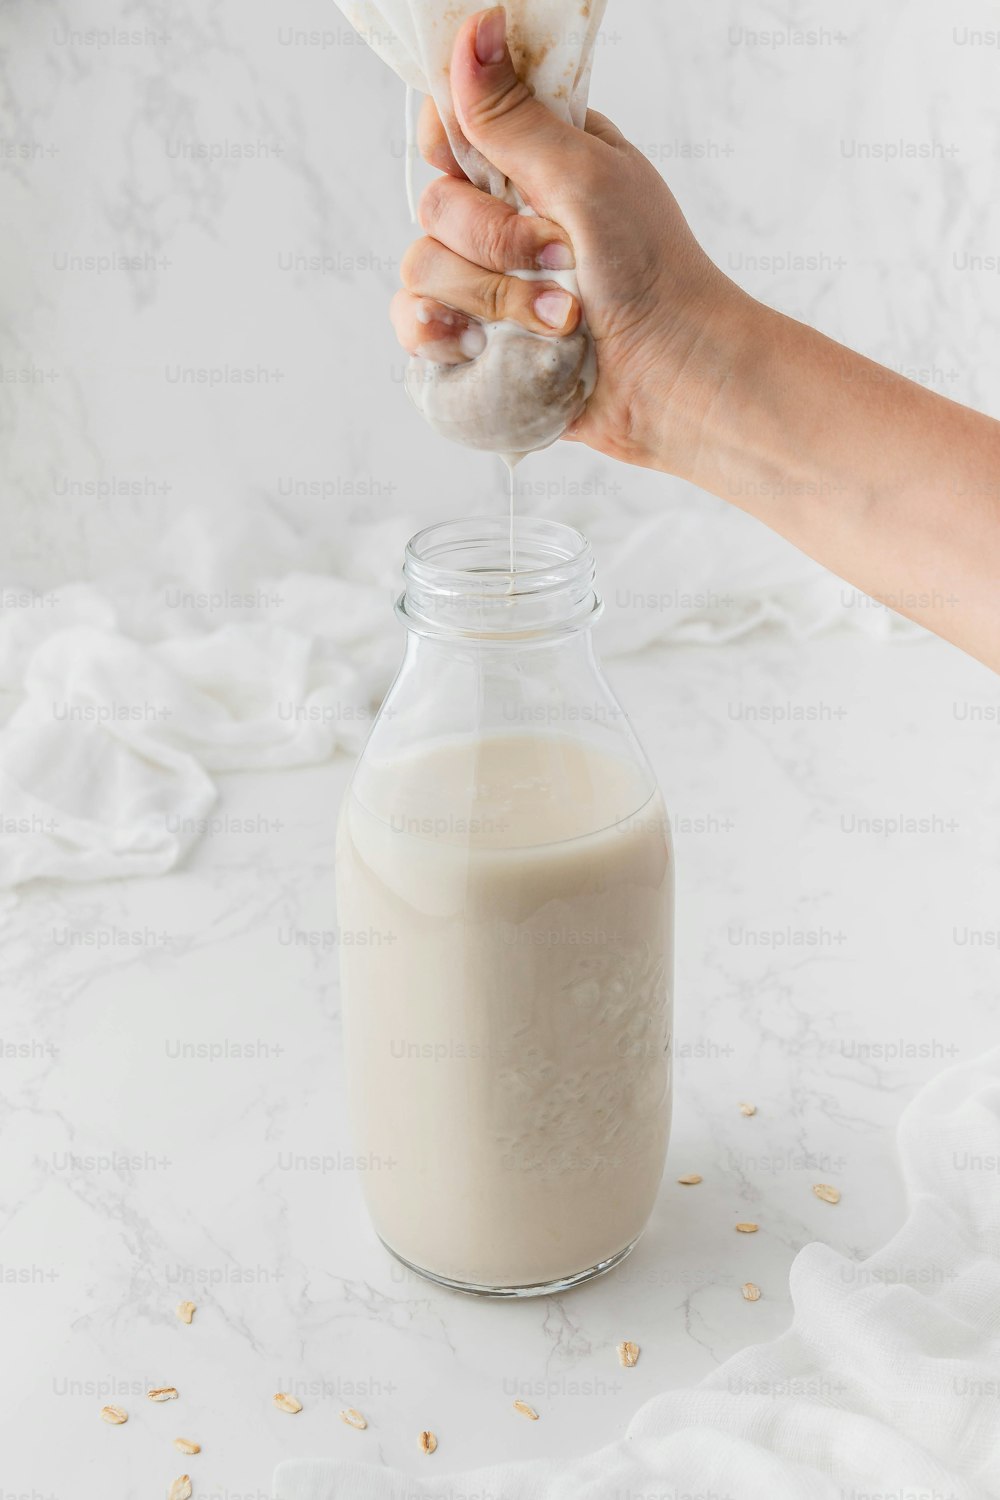 uma pessoa está derramando leite em um frasco de vidro